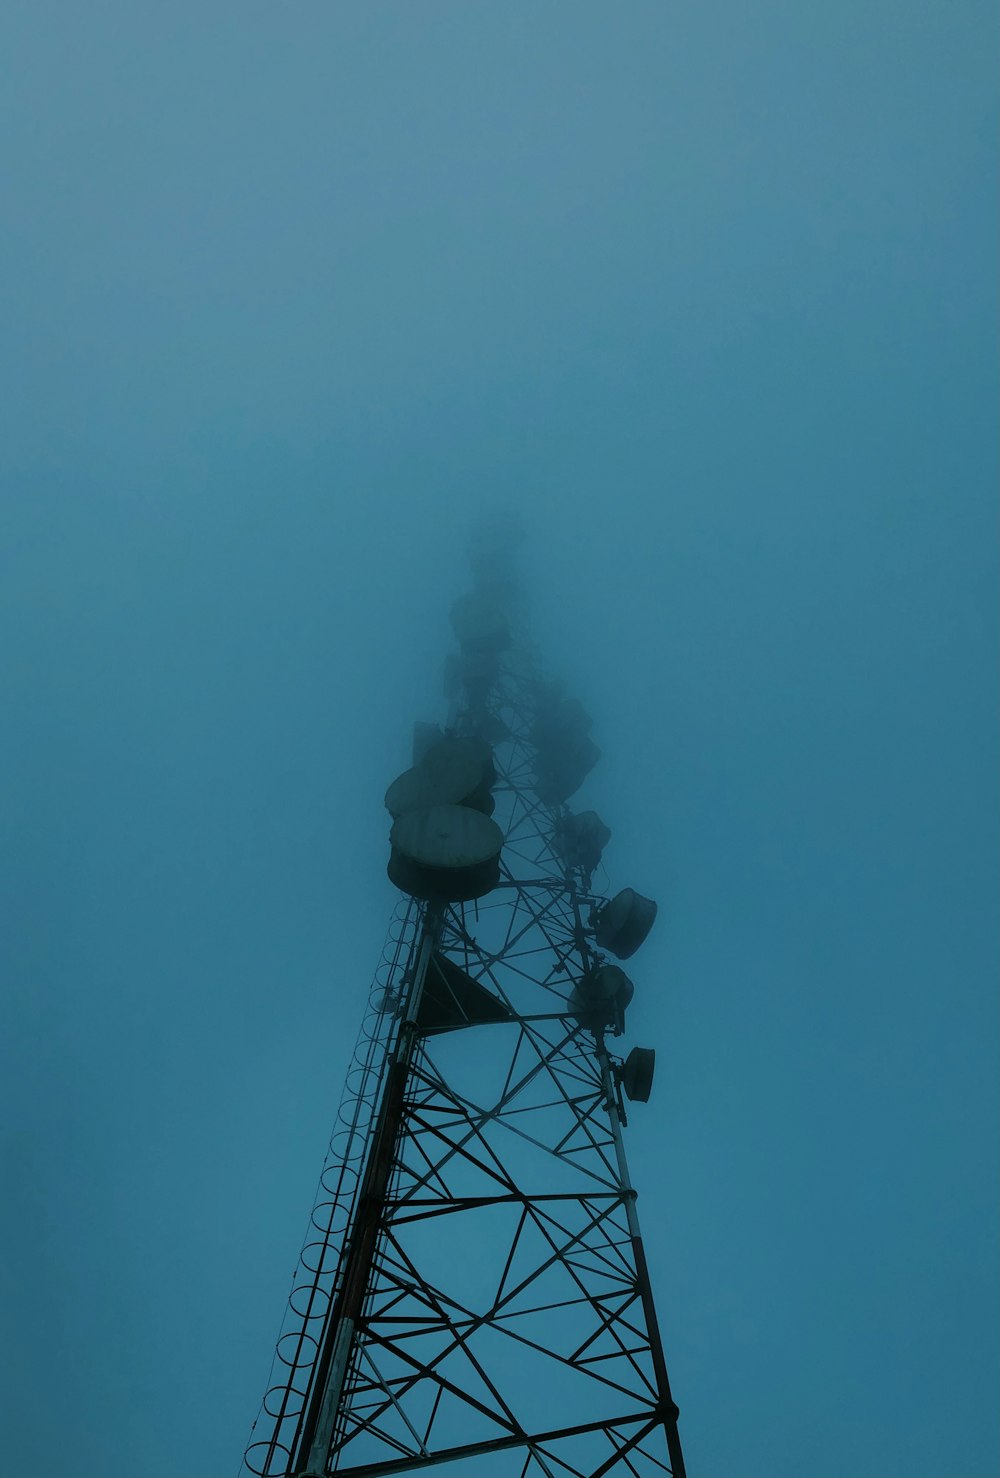 black metal tower under blue sky